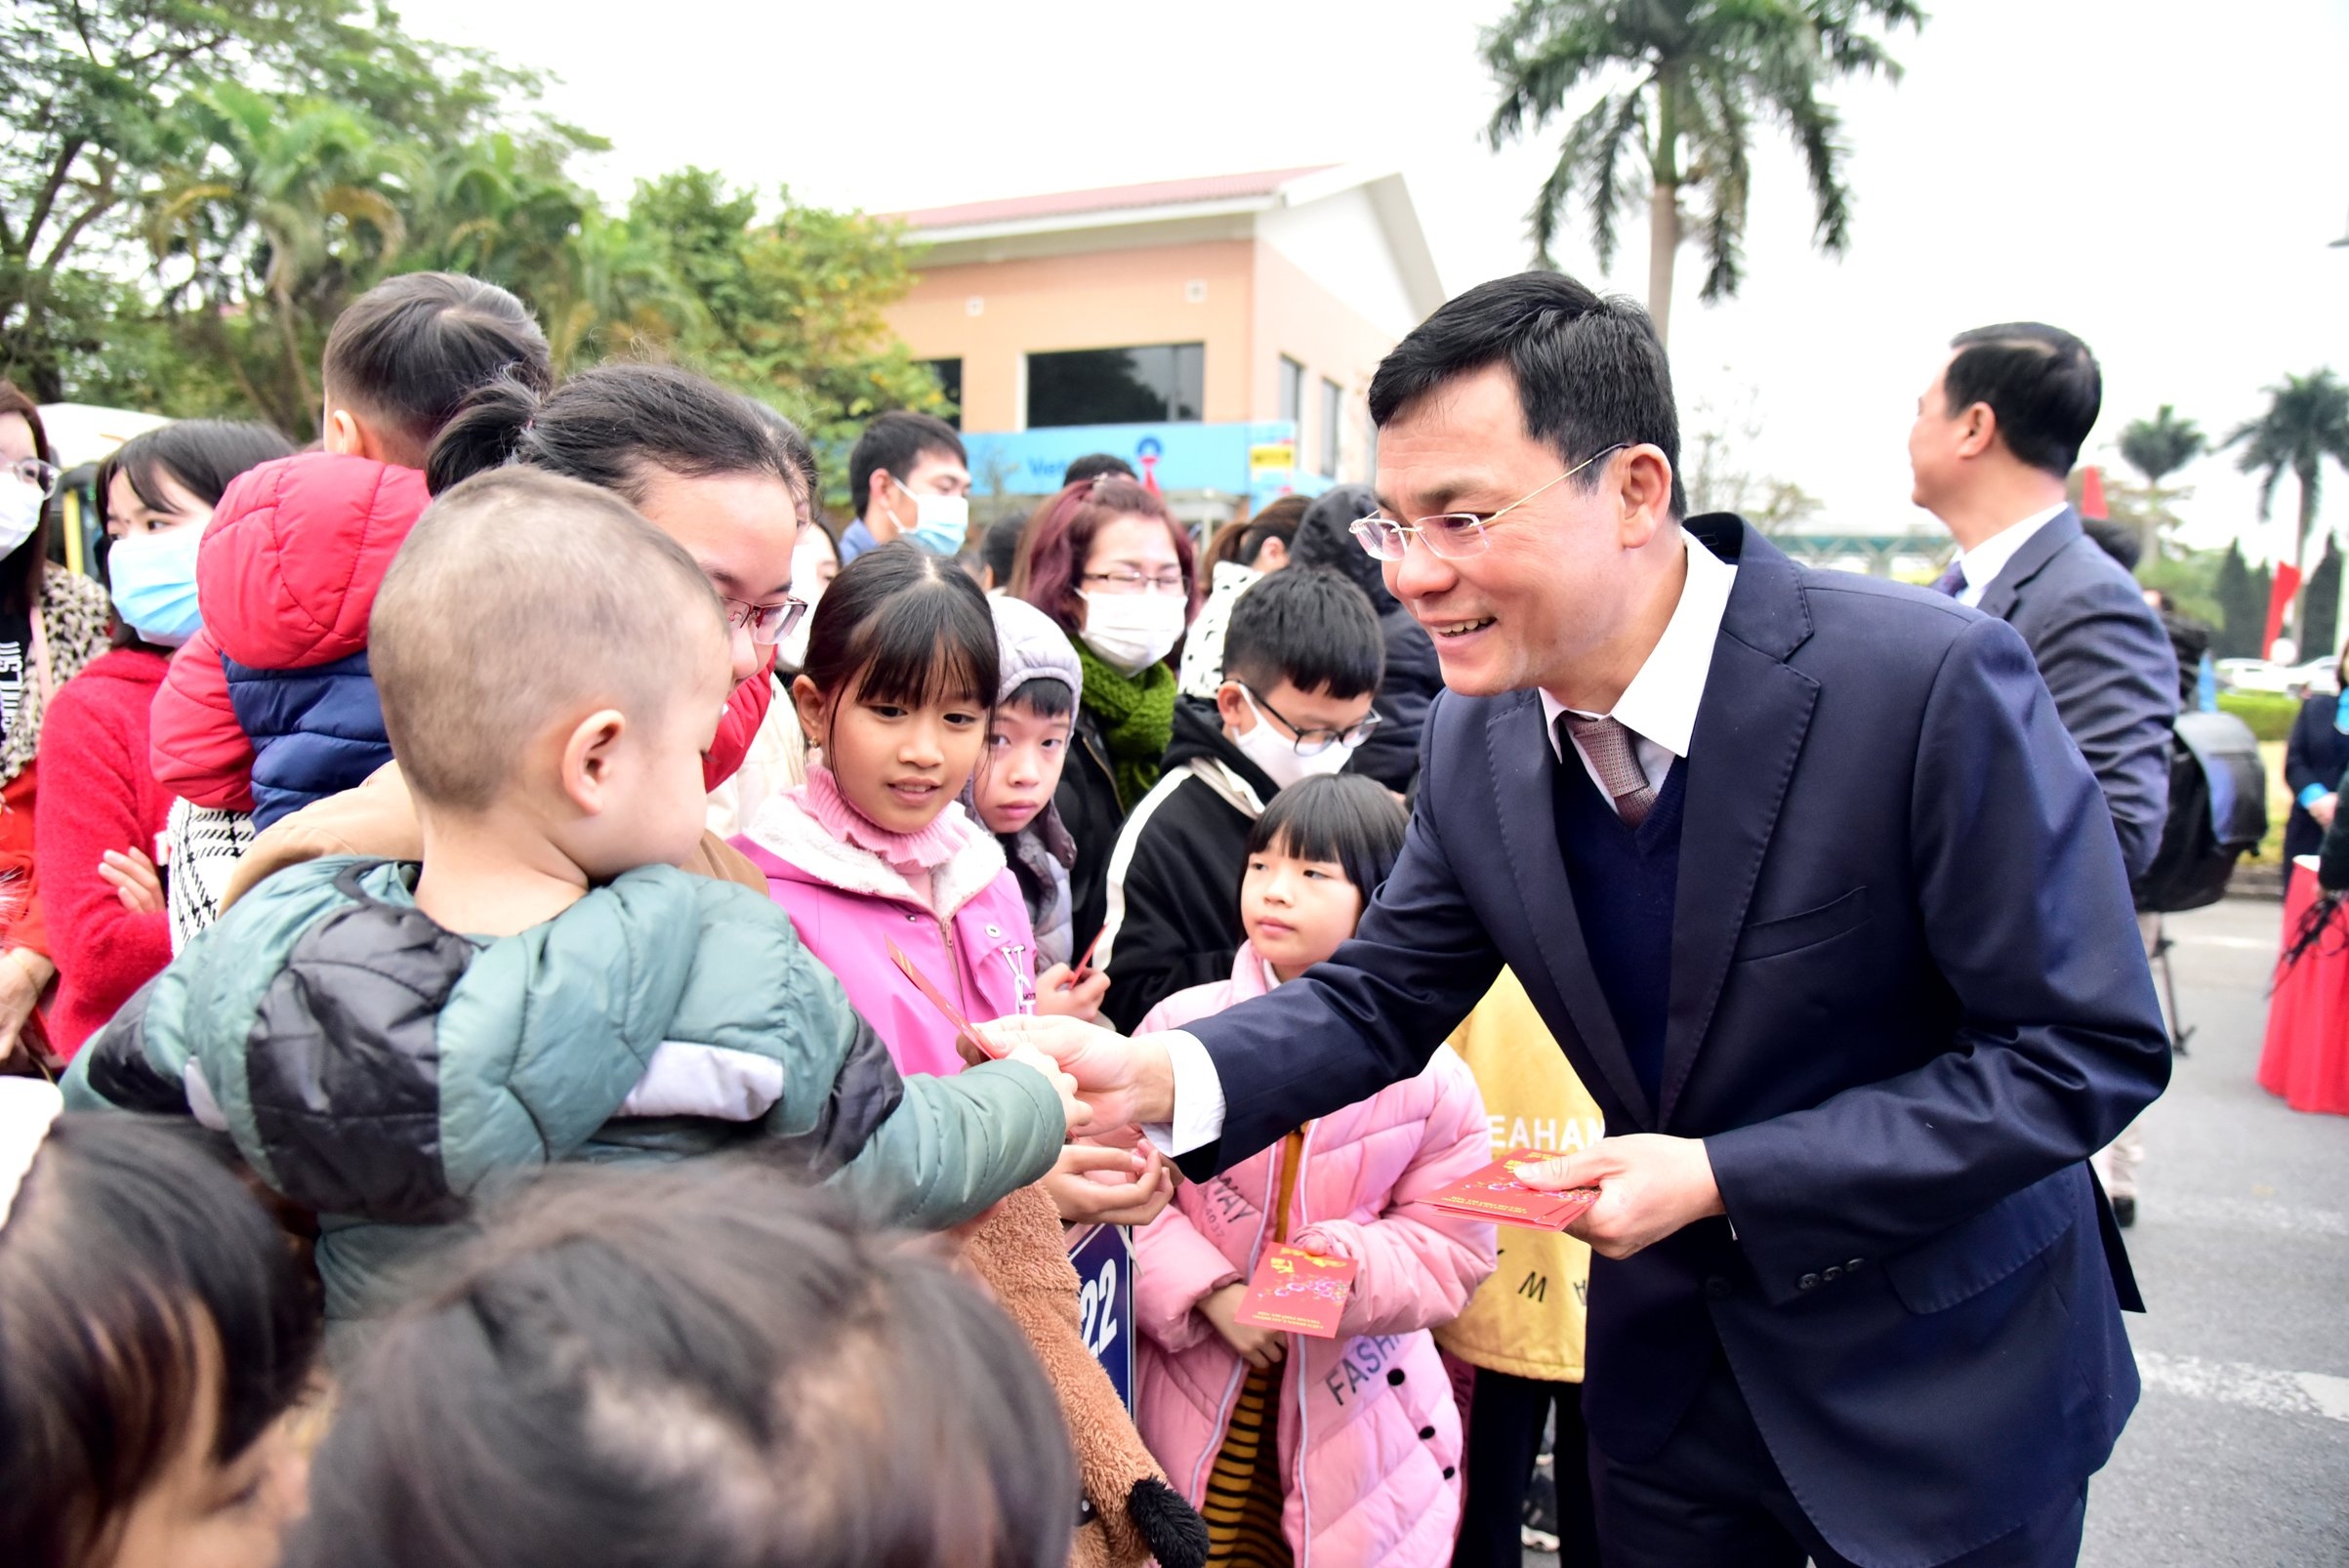 TRỰC TUYẾN: Công đoàn Thủ đô tổ chức 25 chuyến xe miễn phí đưa công nhân về quê đón Tết